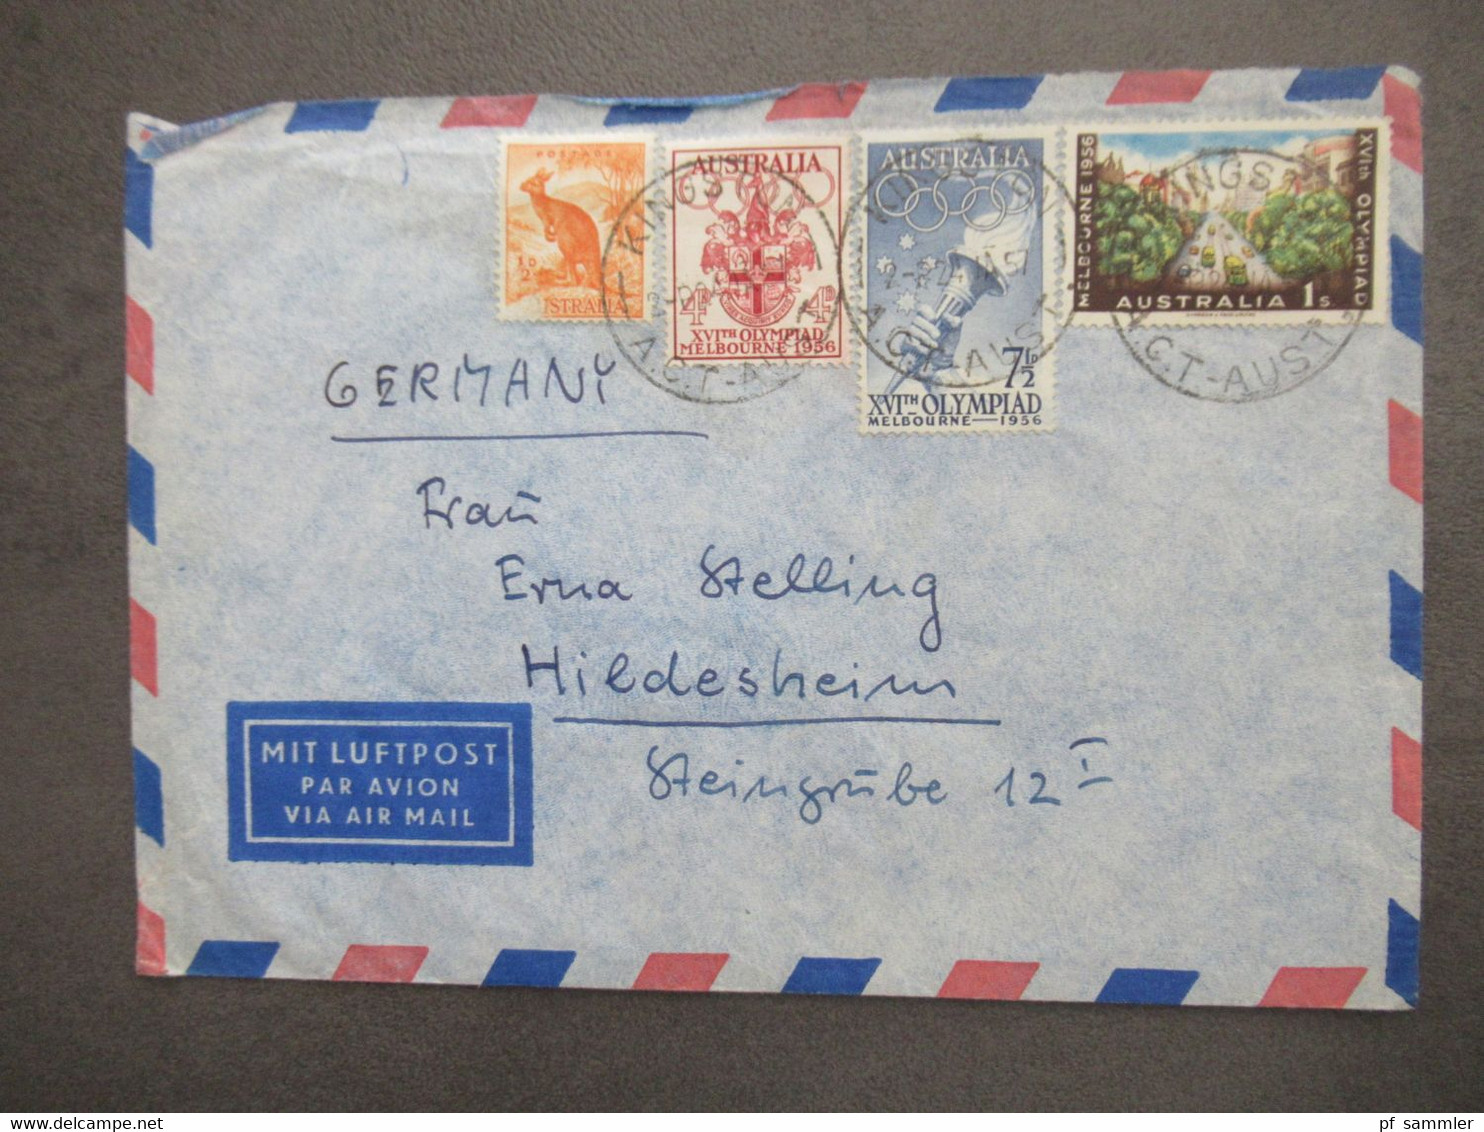 Australien Marken Von 1956 Mit Luftpost Air Mail Kingston - Hildesheim Aulandsbrief - Covers & Documents